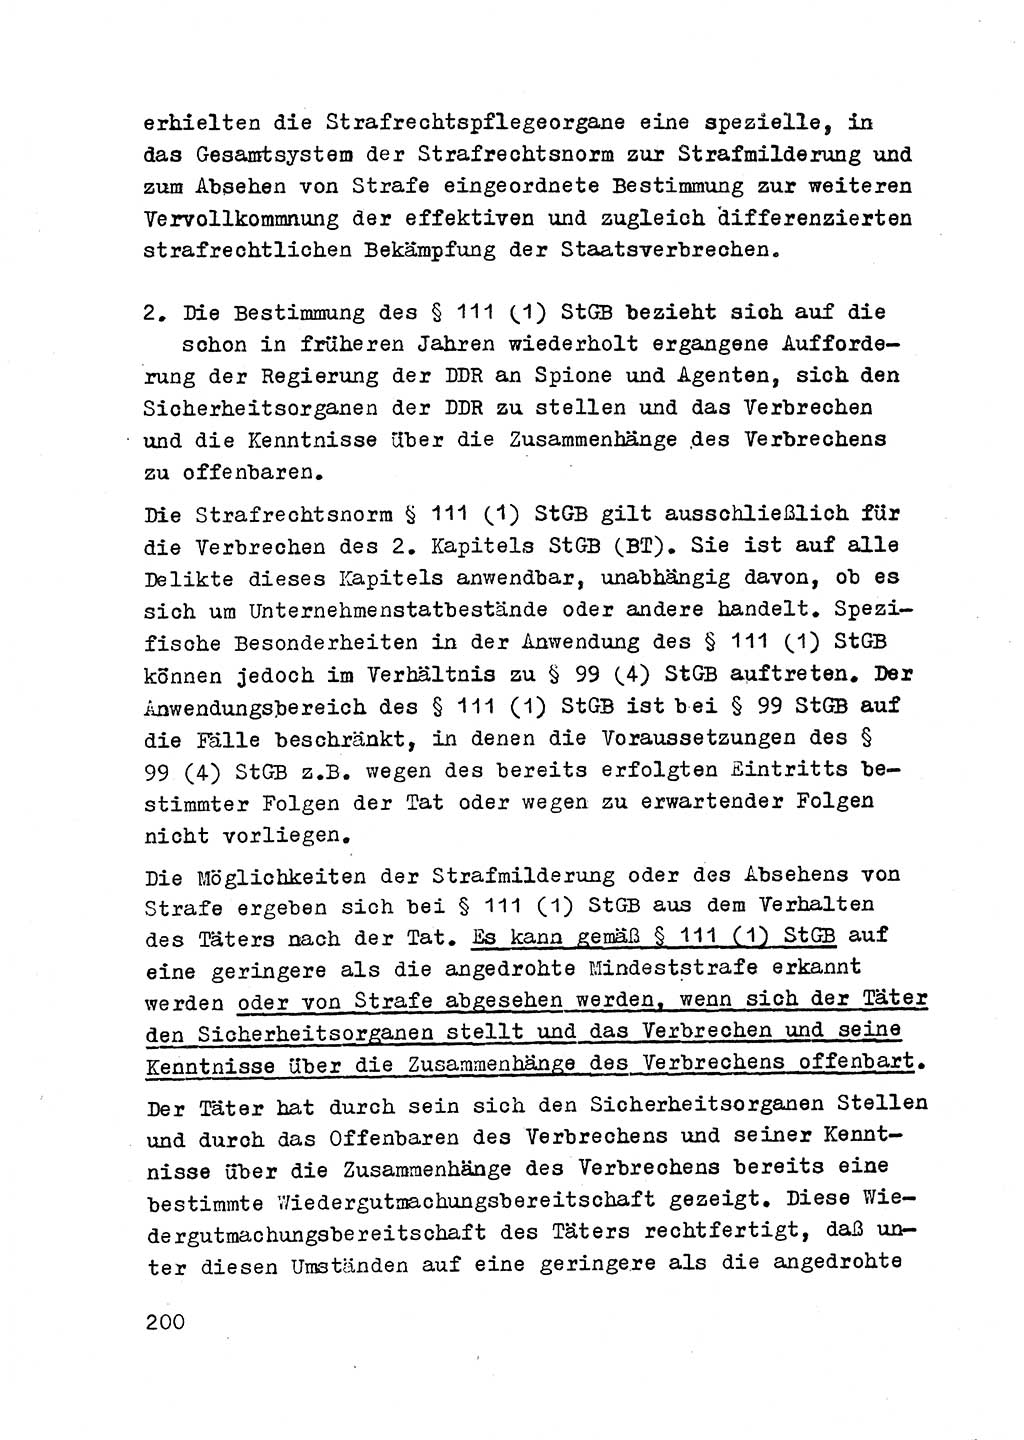 Strafrecht der DDR (Deutsche Demokratische Republik), Besonderer Teil, Lehrmaterial, Heft 2 1969, Seite 200 (Strafr. DDR BT Lehrmat. H. 2 1969, S. 200)